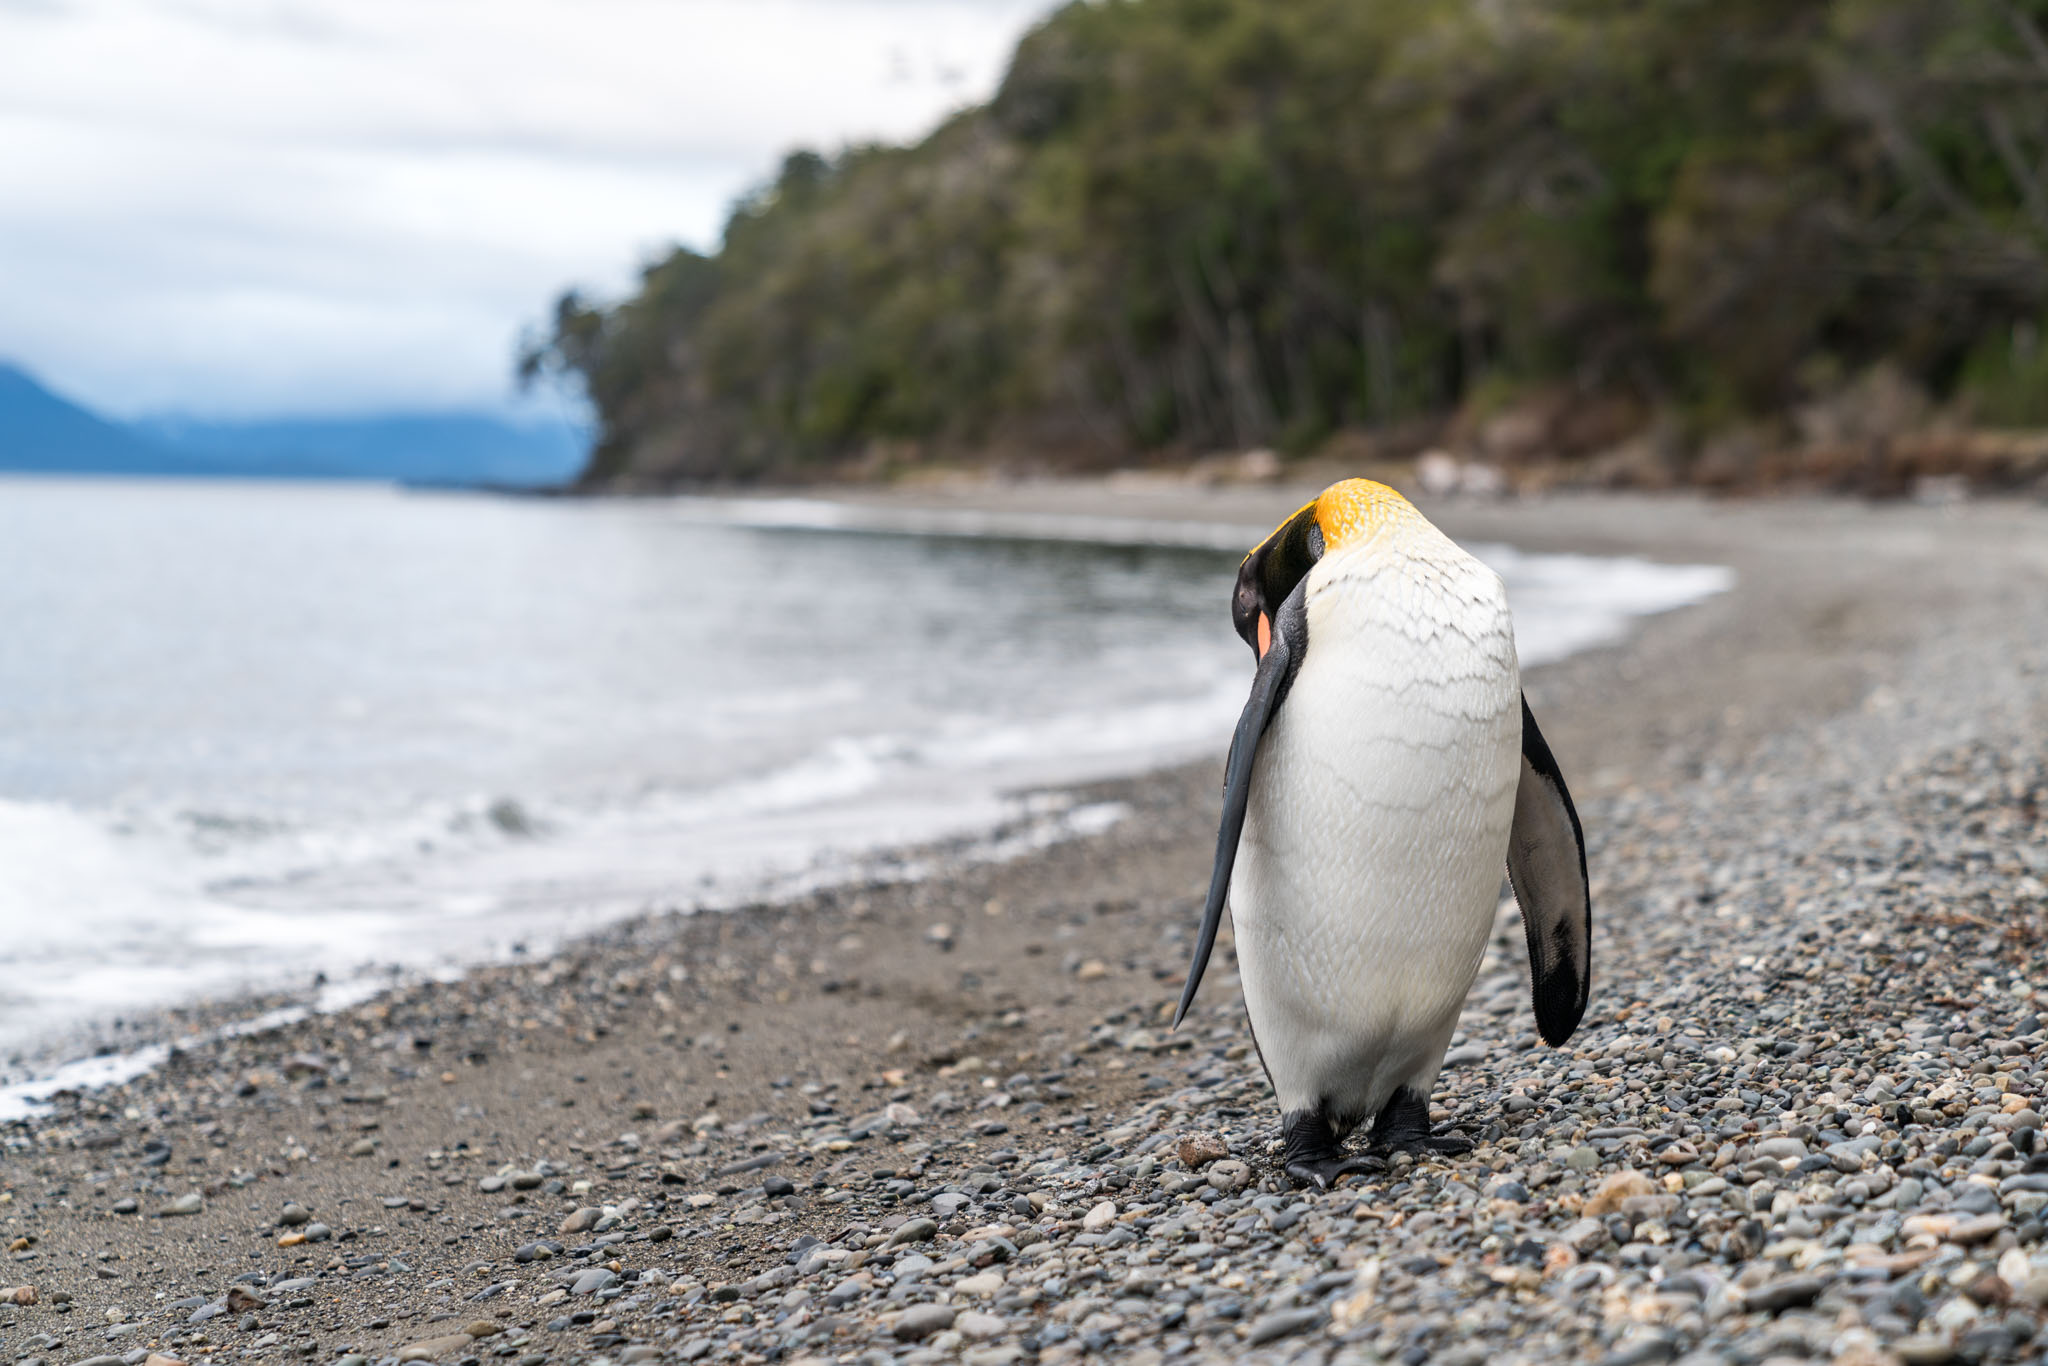 a penguin walking on a rocky beach